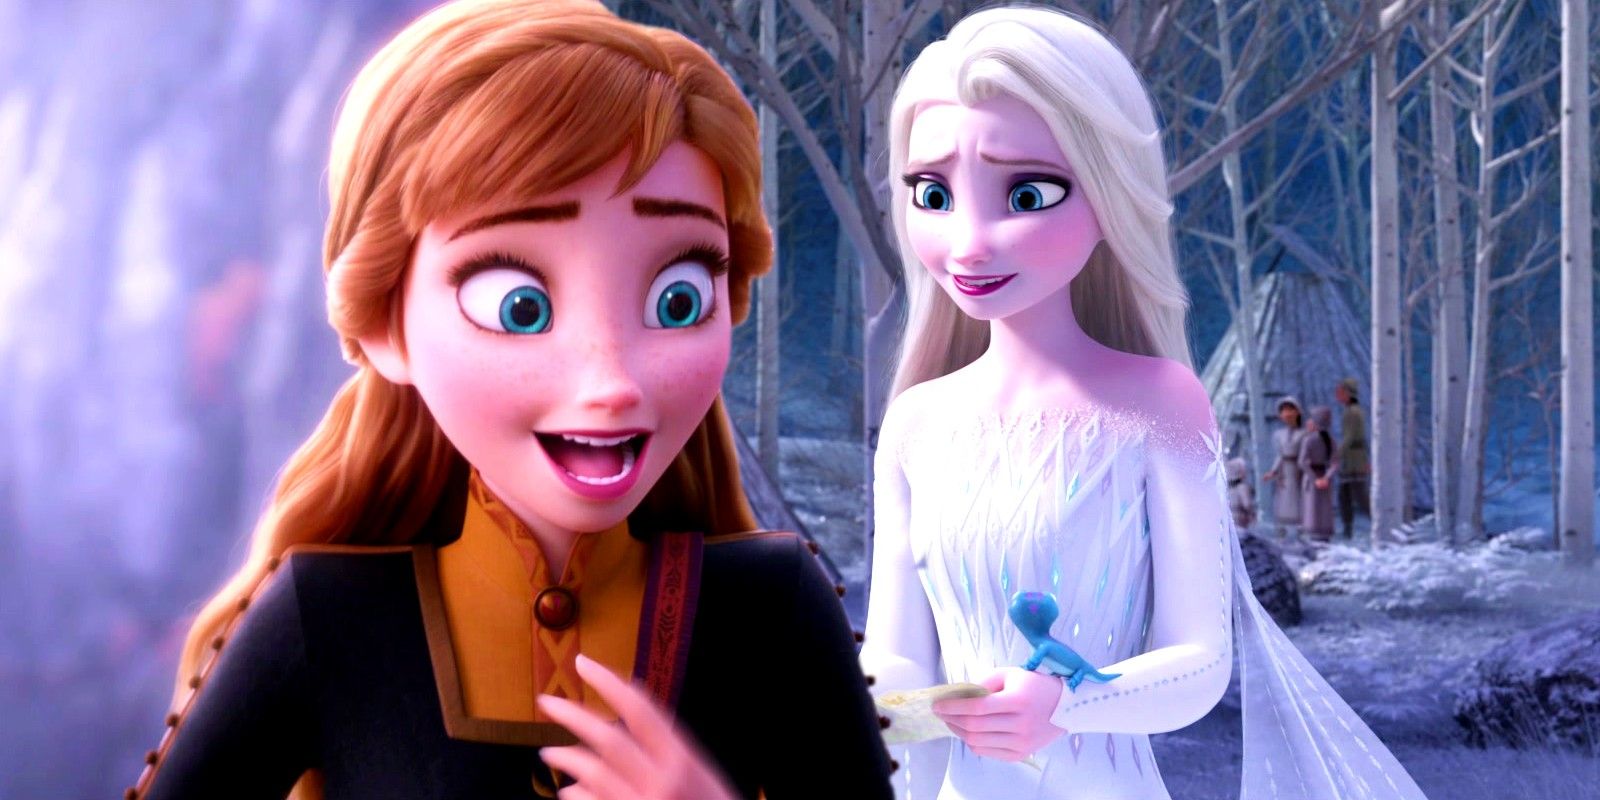 Frozen 4 Is In Development Alongside Frozen 3, Disney CEO Confirms